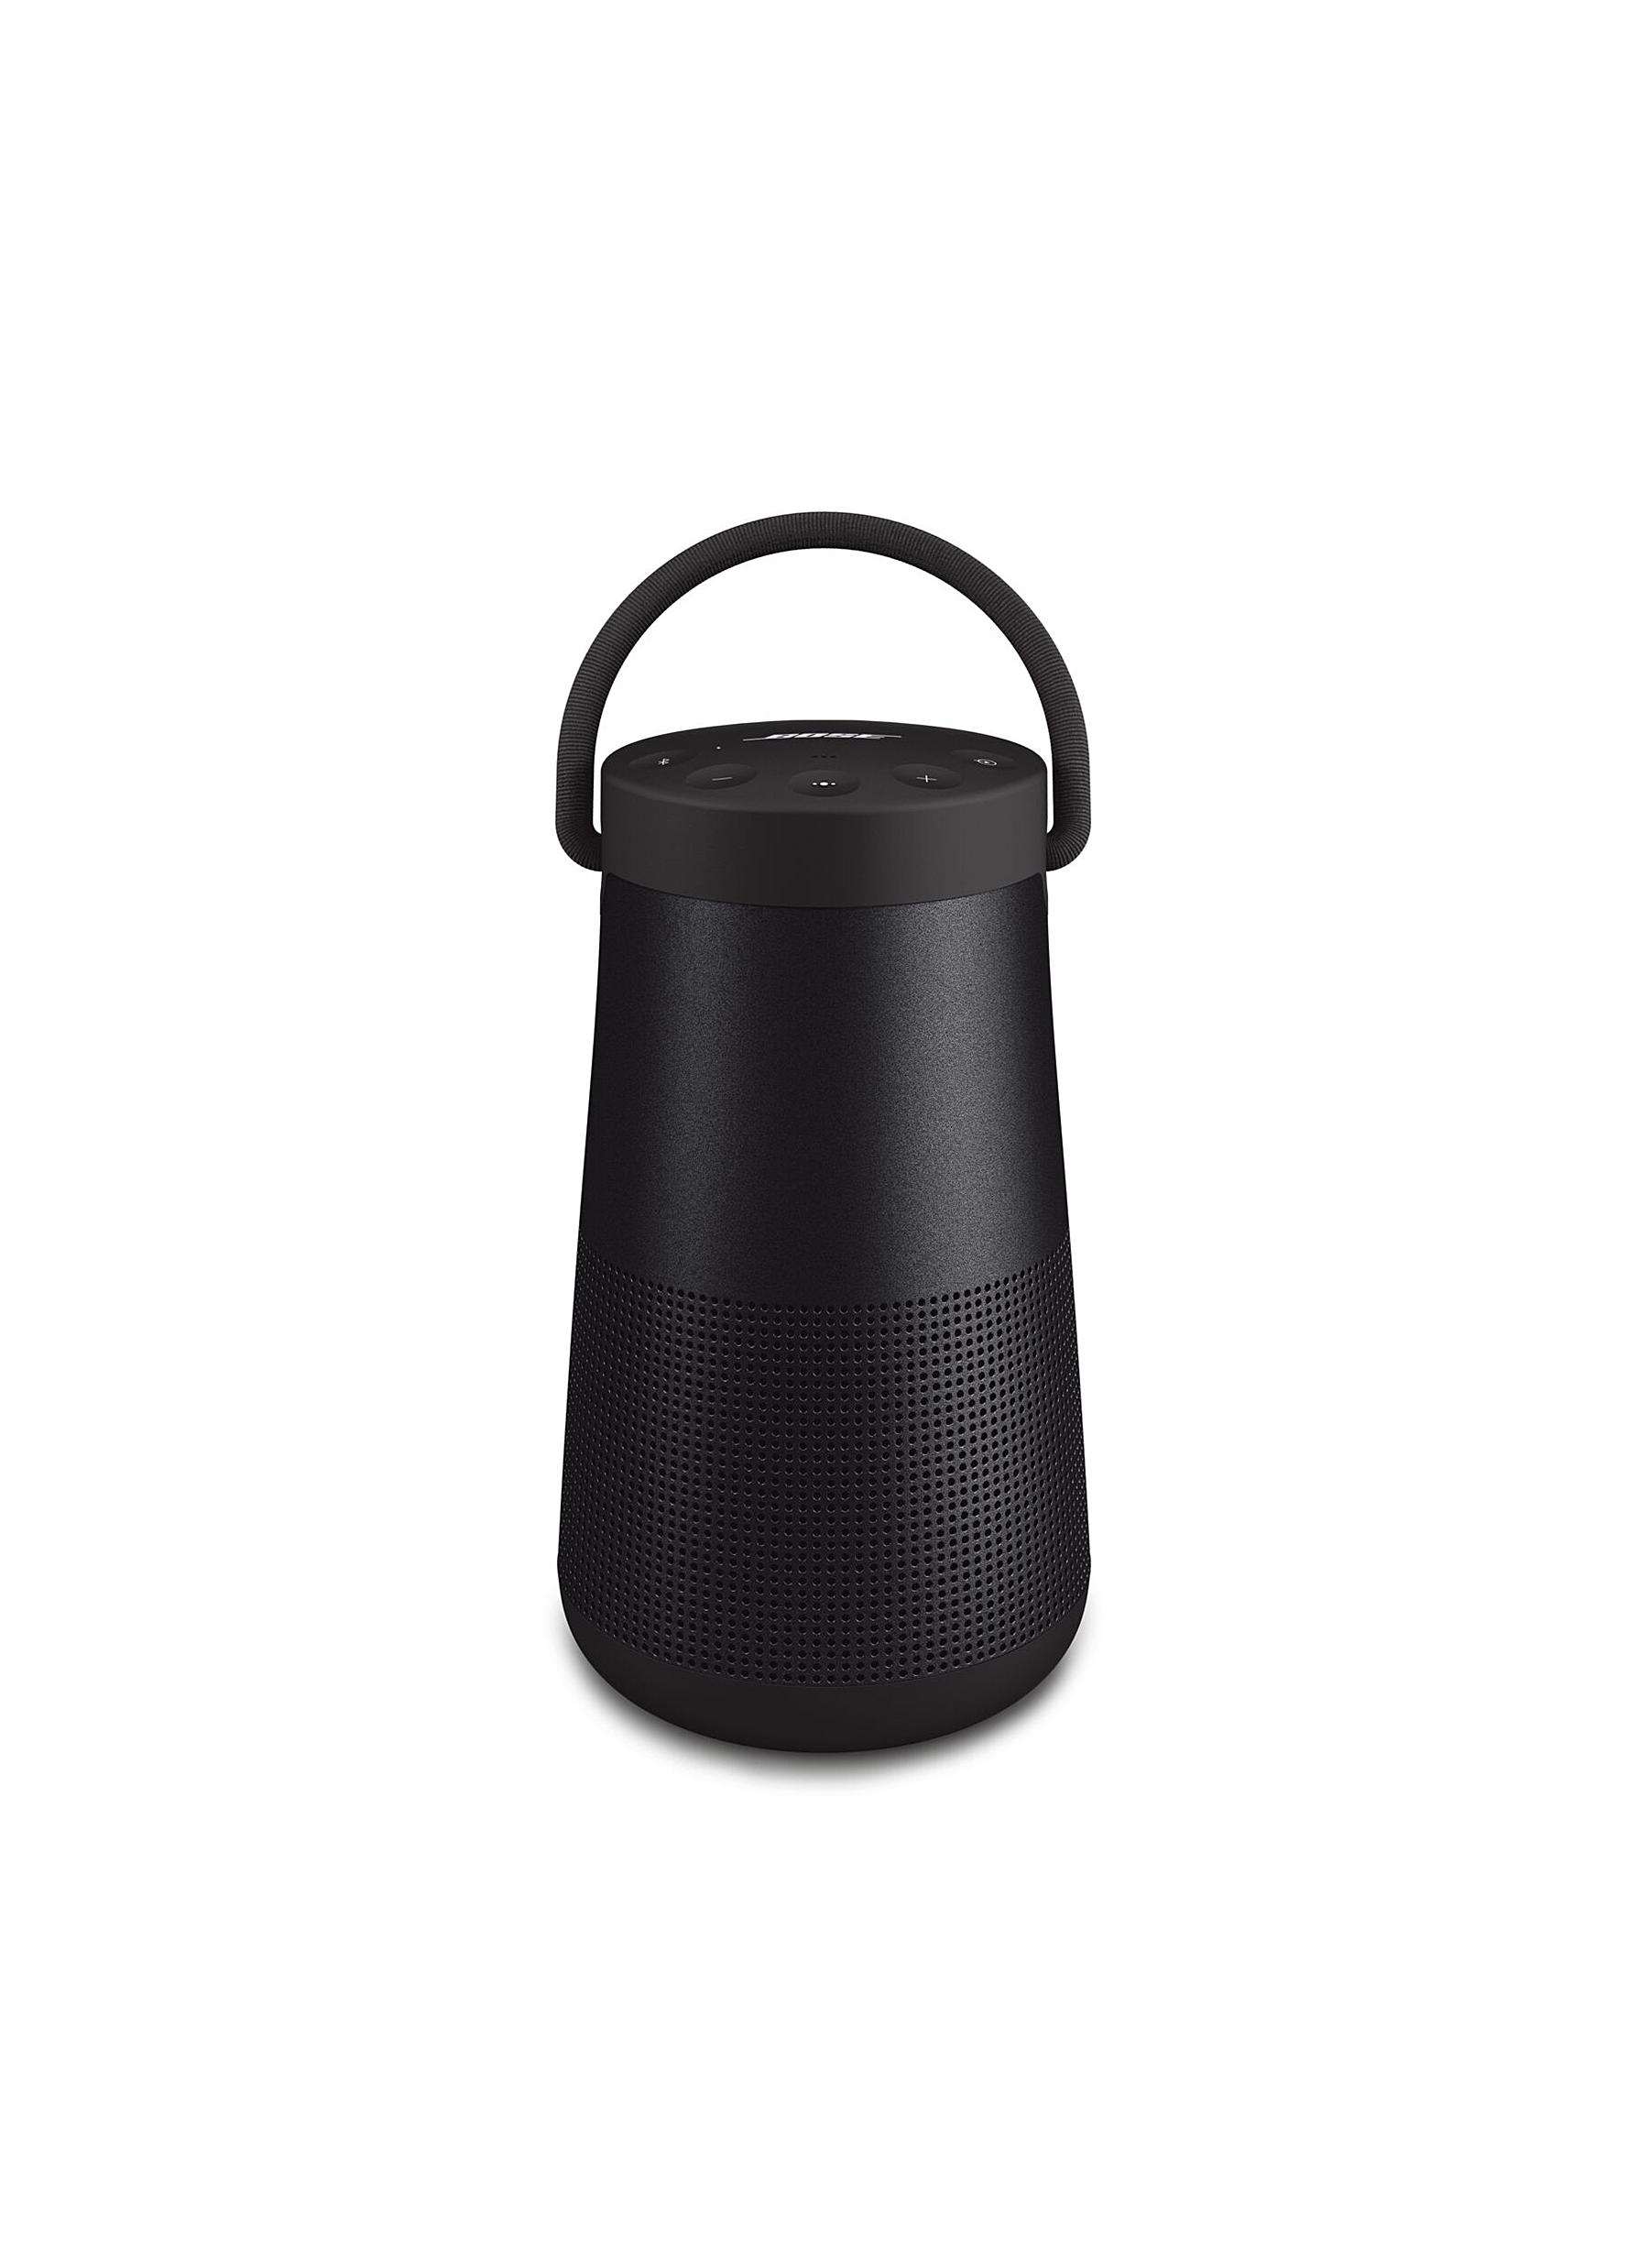 Bose Soundlink Revolve+ Ii Wireless Speaker - Triple Black